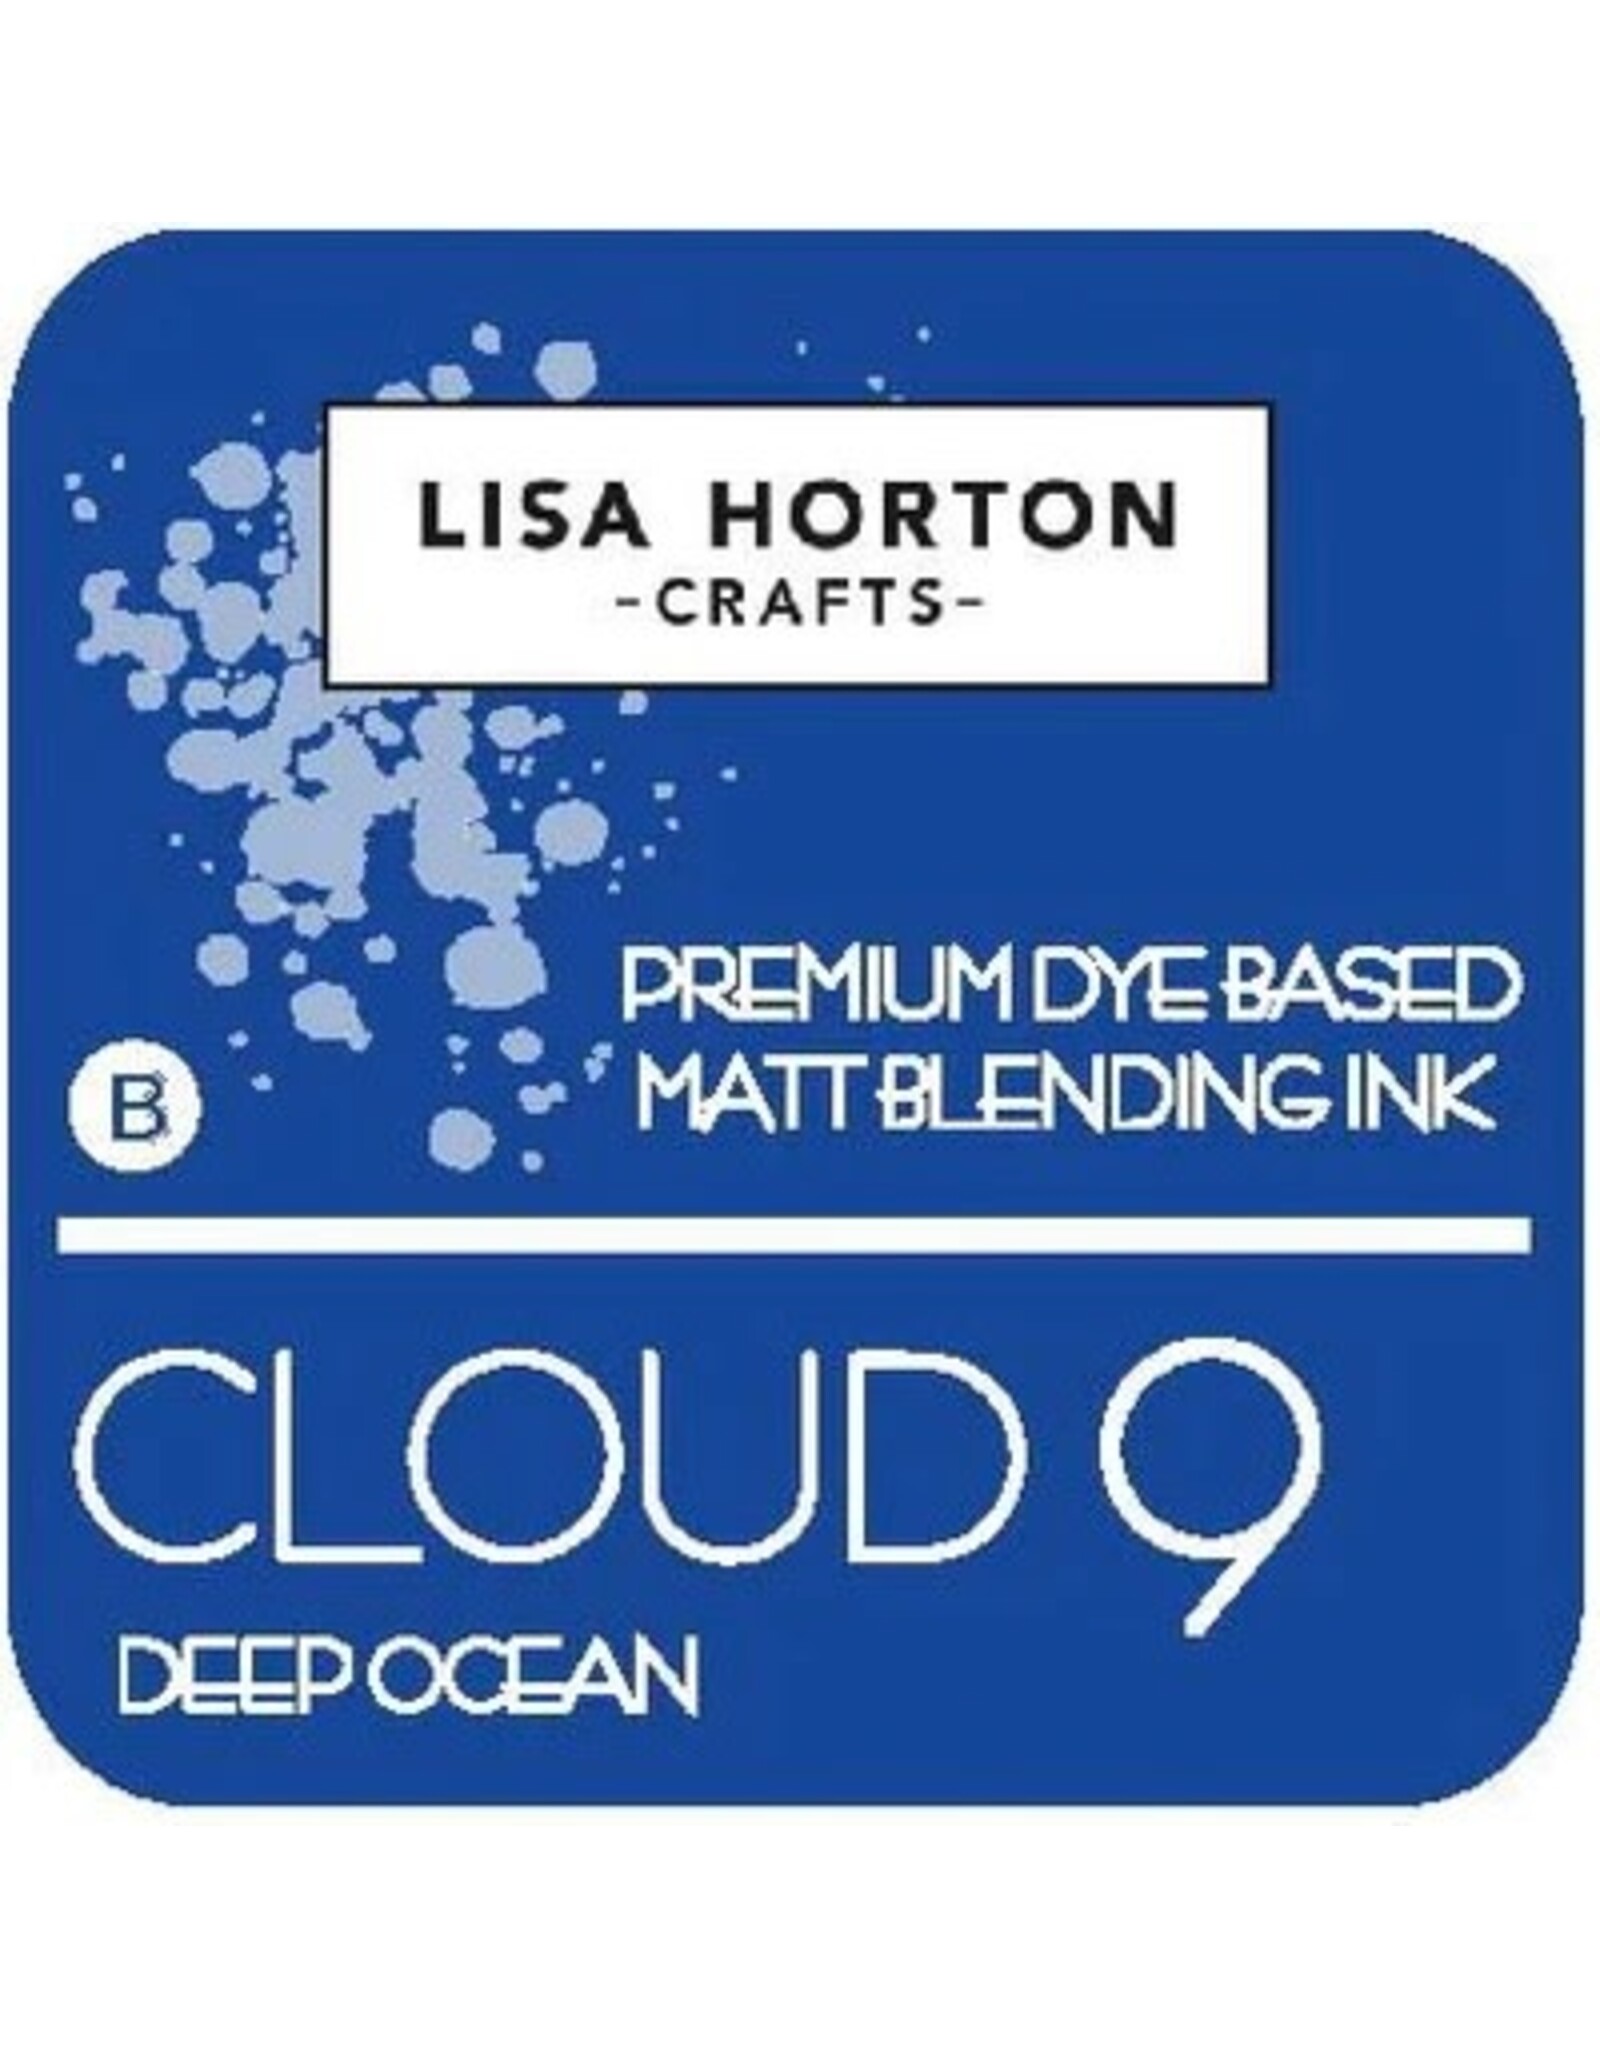 LISA HORTON CRAFTS LISA HORTON CRAFTS CLOUD 9 MATT BLENDING INK - DEEP OCEAN